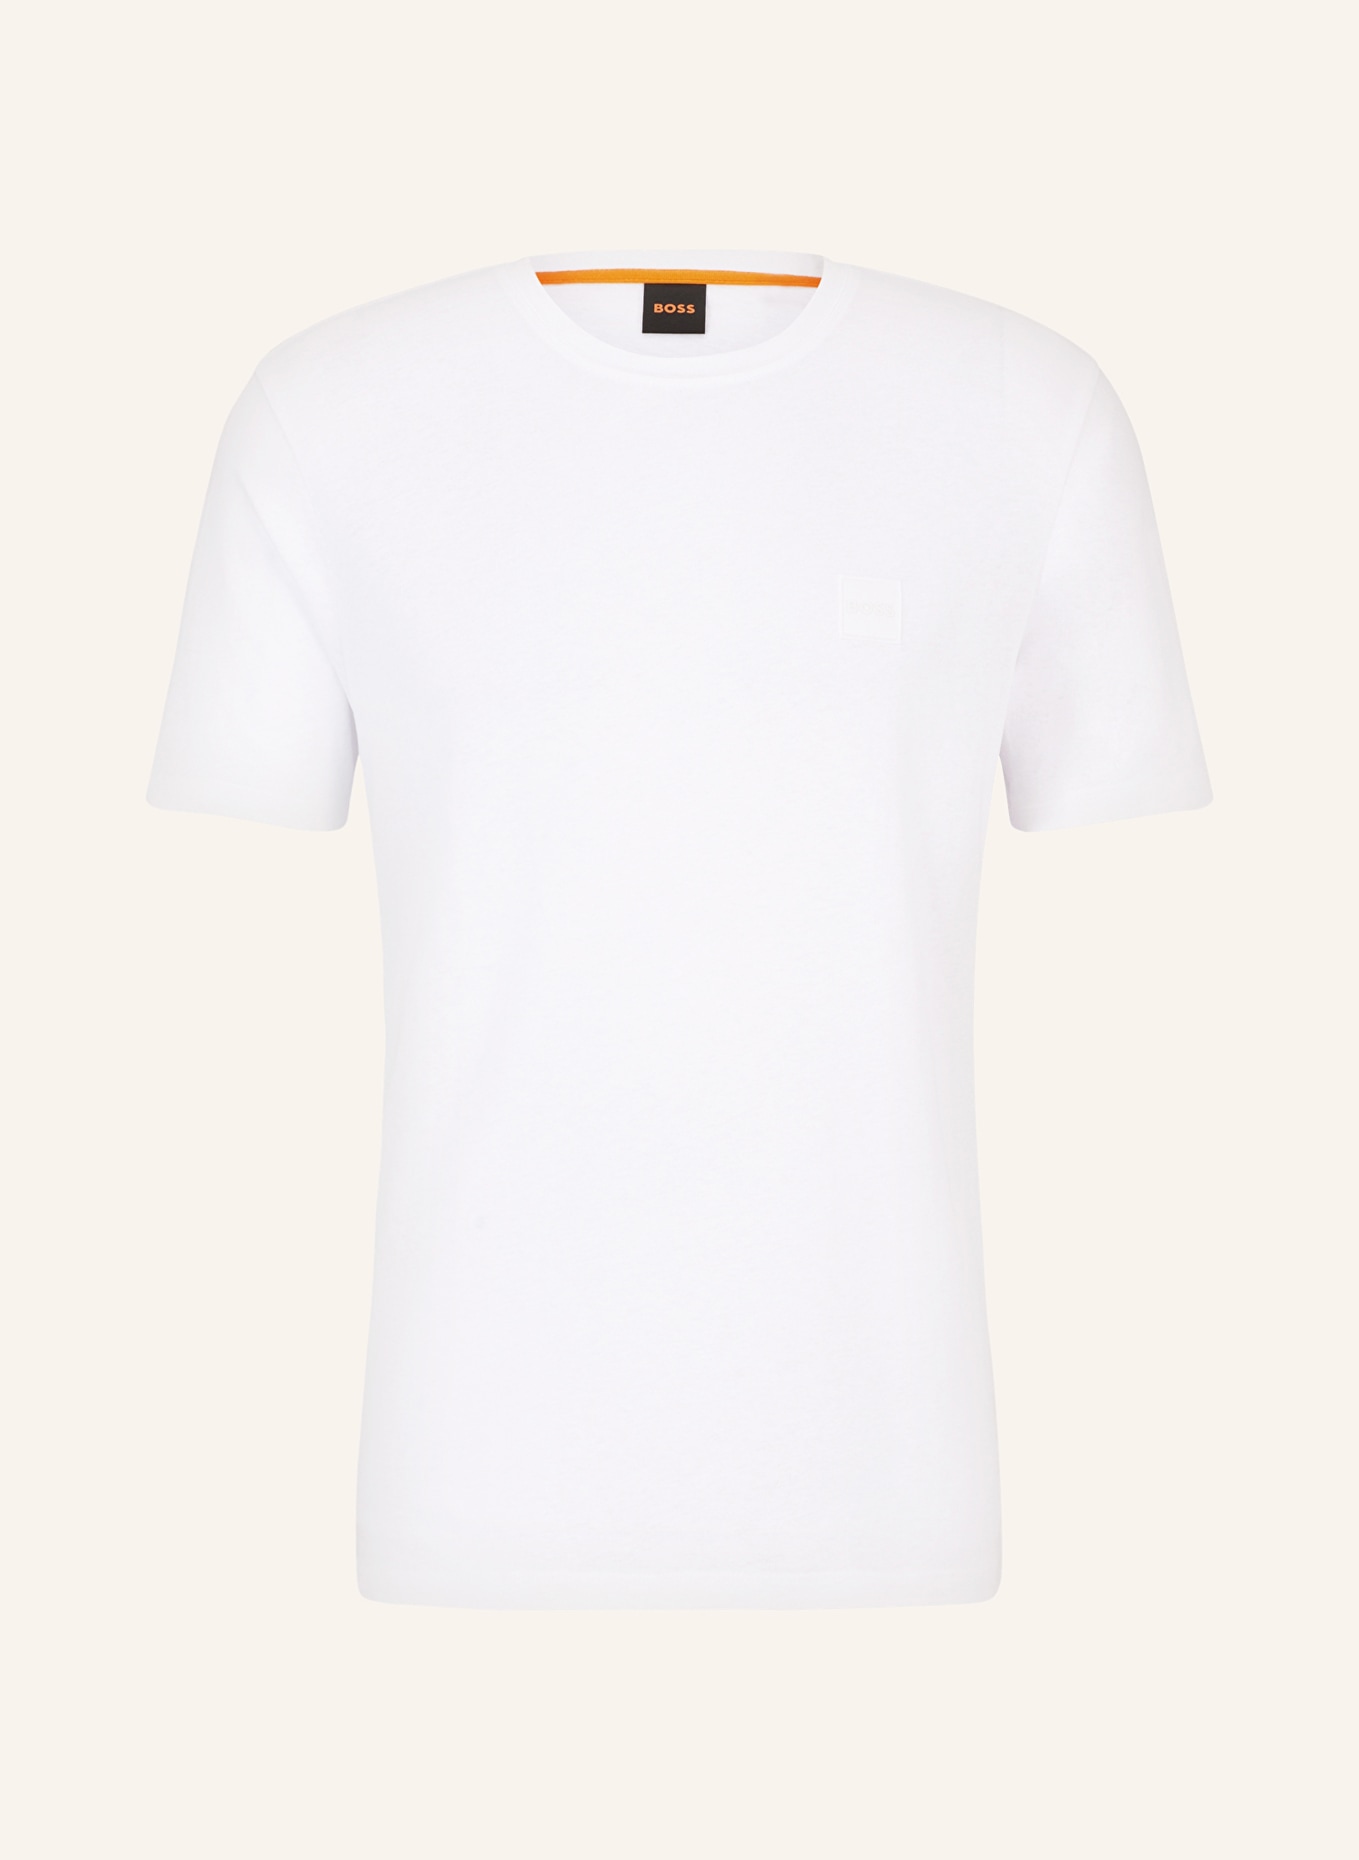 BOSS T-Shirt TALES, Farbe: WEISS (Bild 1)